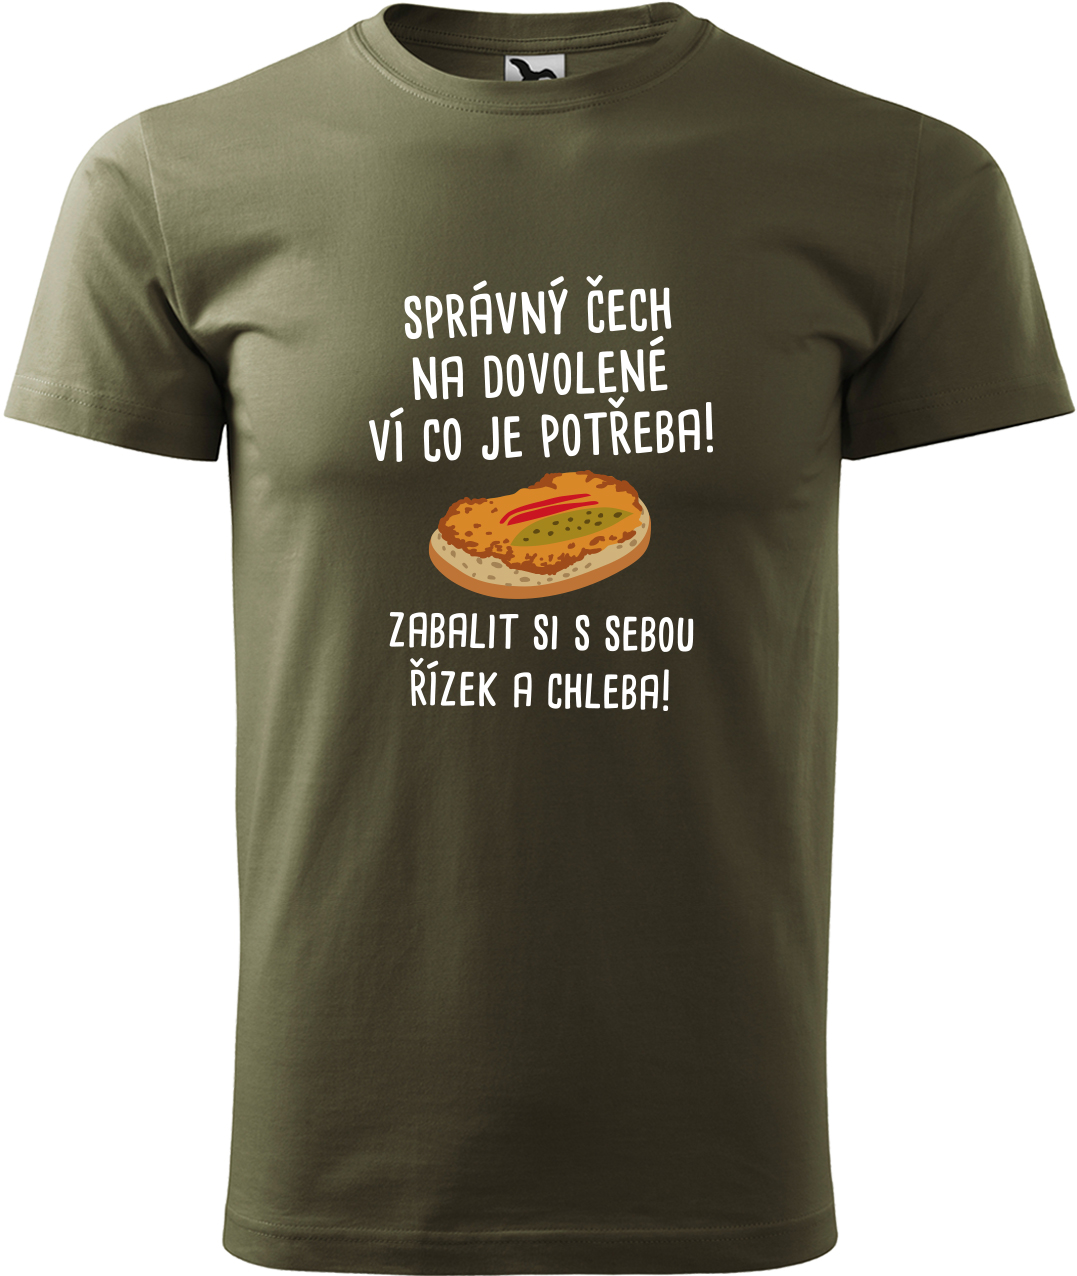 Pánské cestovatelské tričko - Správný Čech na dovolené, ví co je potřeba! Velikost: L, Barva: Military (69), Střih: pánský